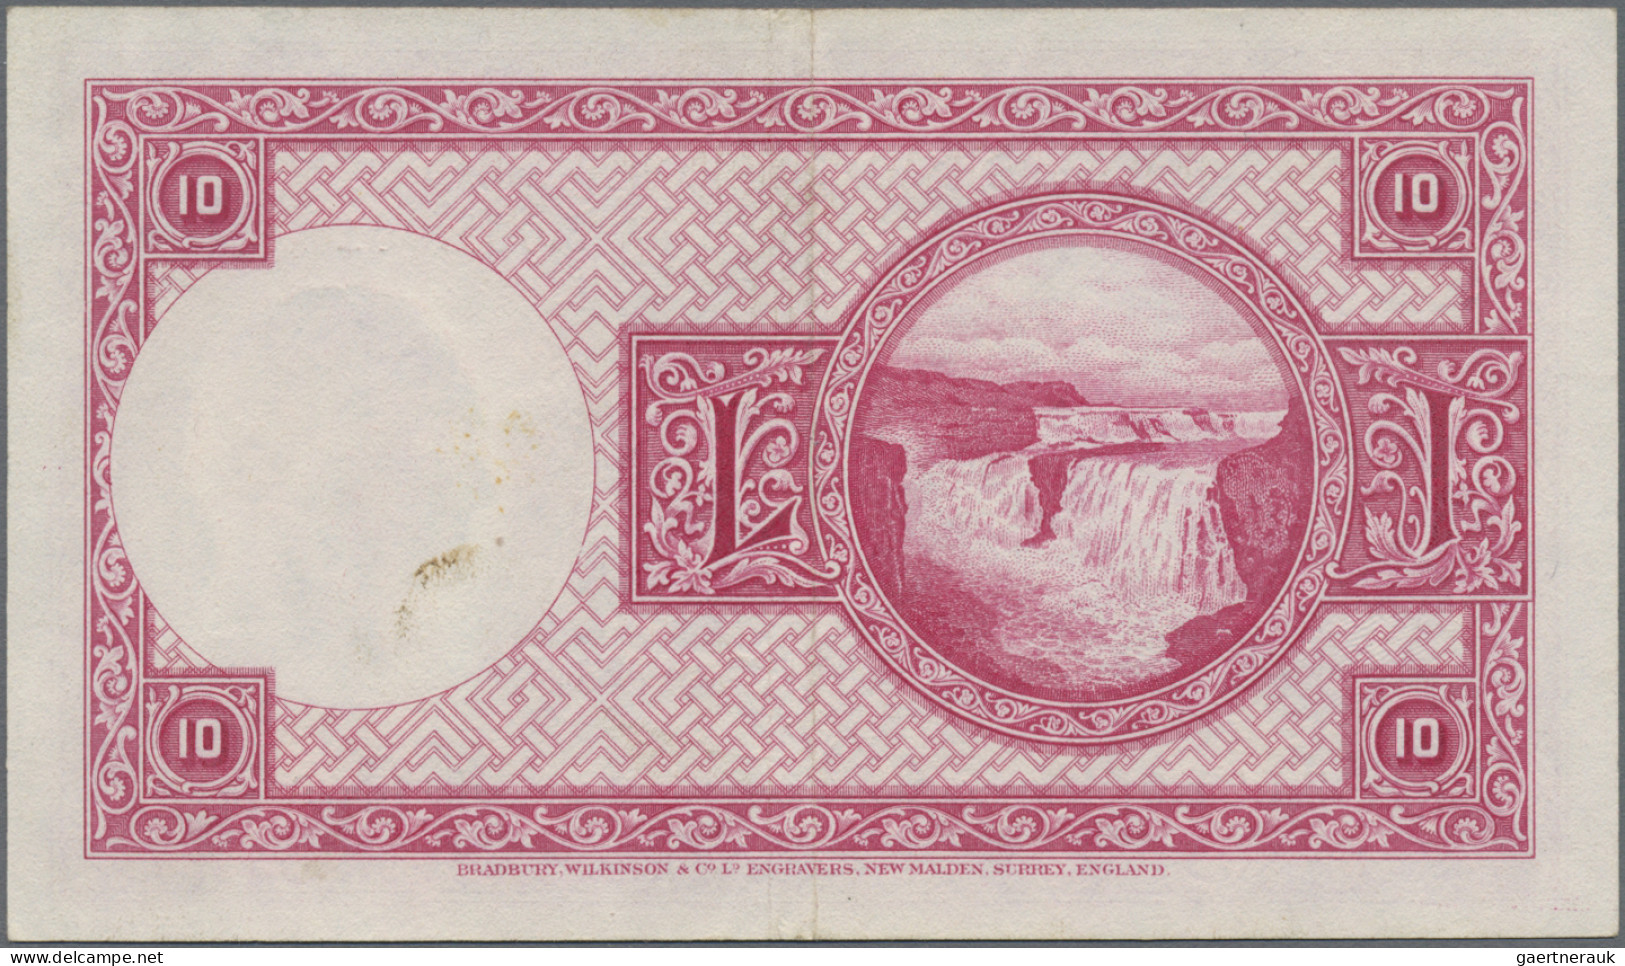 Iceland: Landsbanki Íslands, set with 7 banknotes, series L.15.04.1928, with 2x